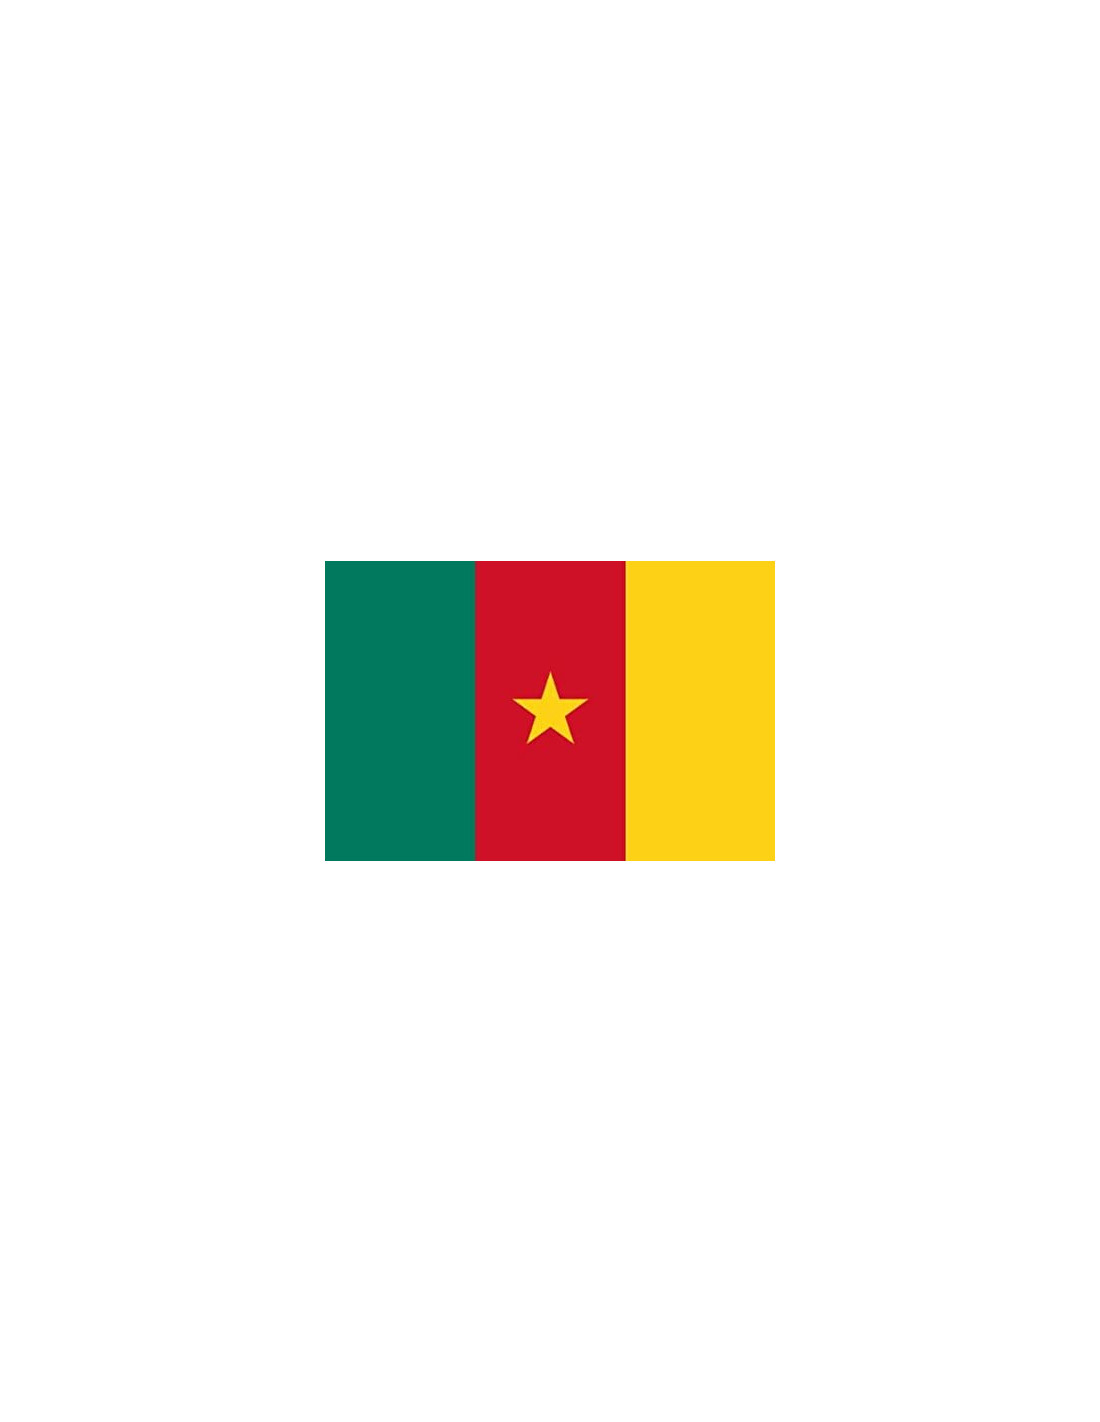 Drapeau Cameroun - 90 x 150 cm